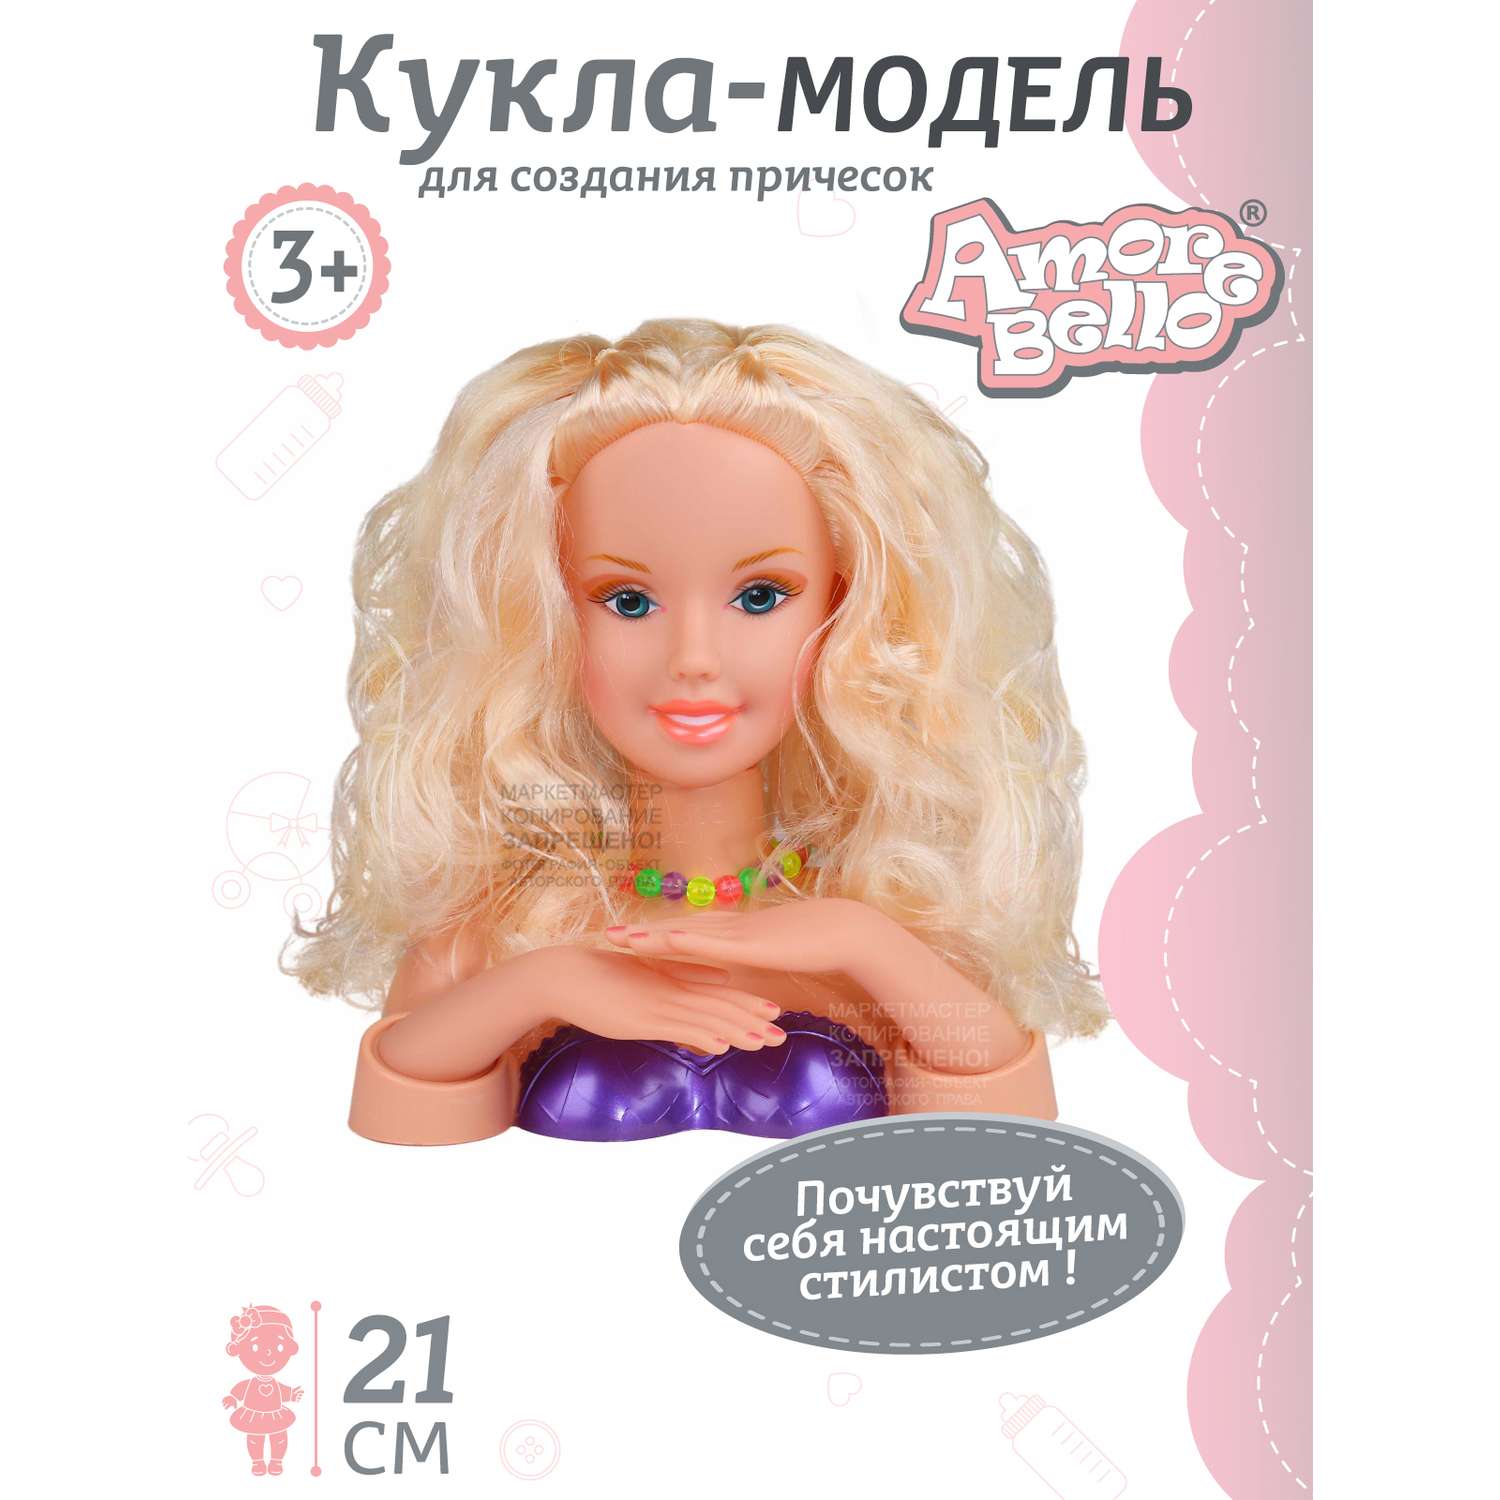 Головы куклы для причесок - купить в интернет-магазине Мирамида™ в Украине | Цены, фото и отзывы.